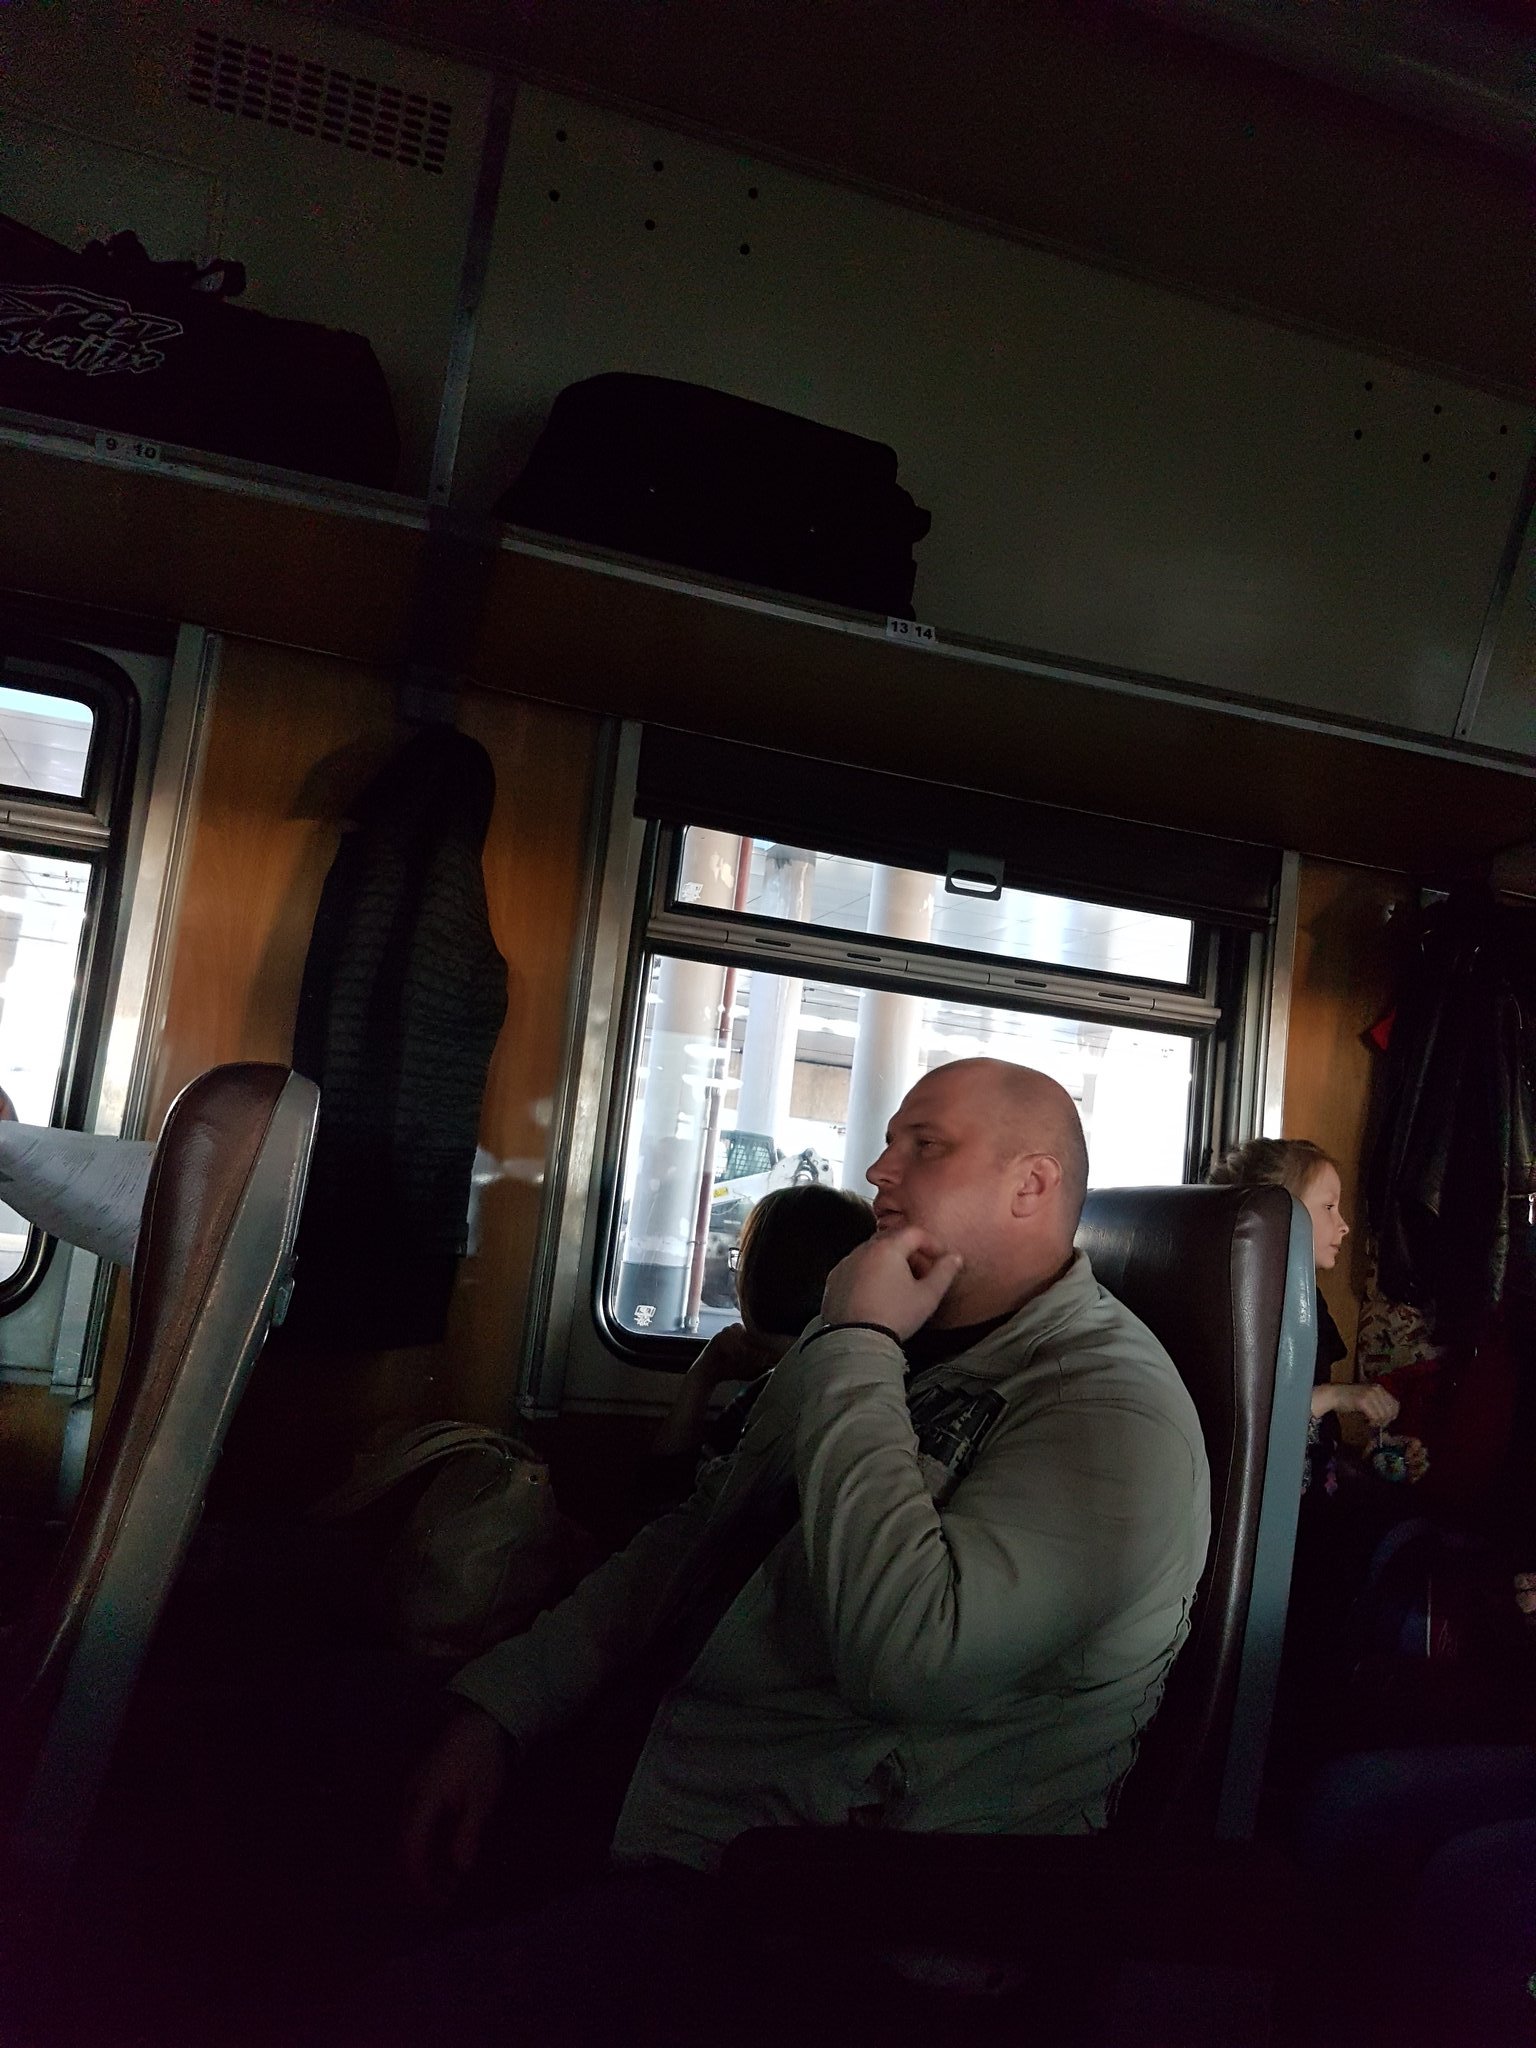 сидячие места в поезде тольятти москва